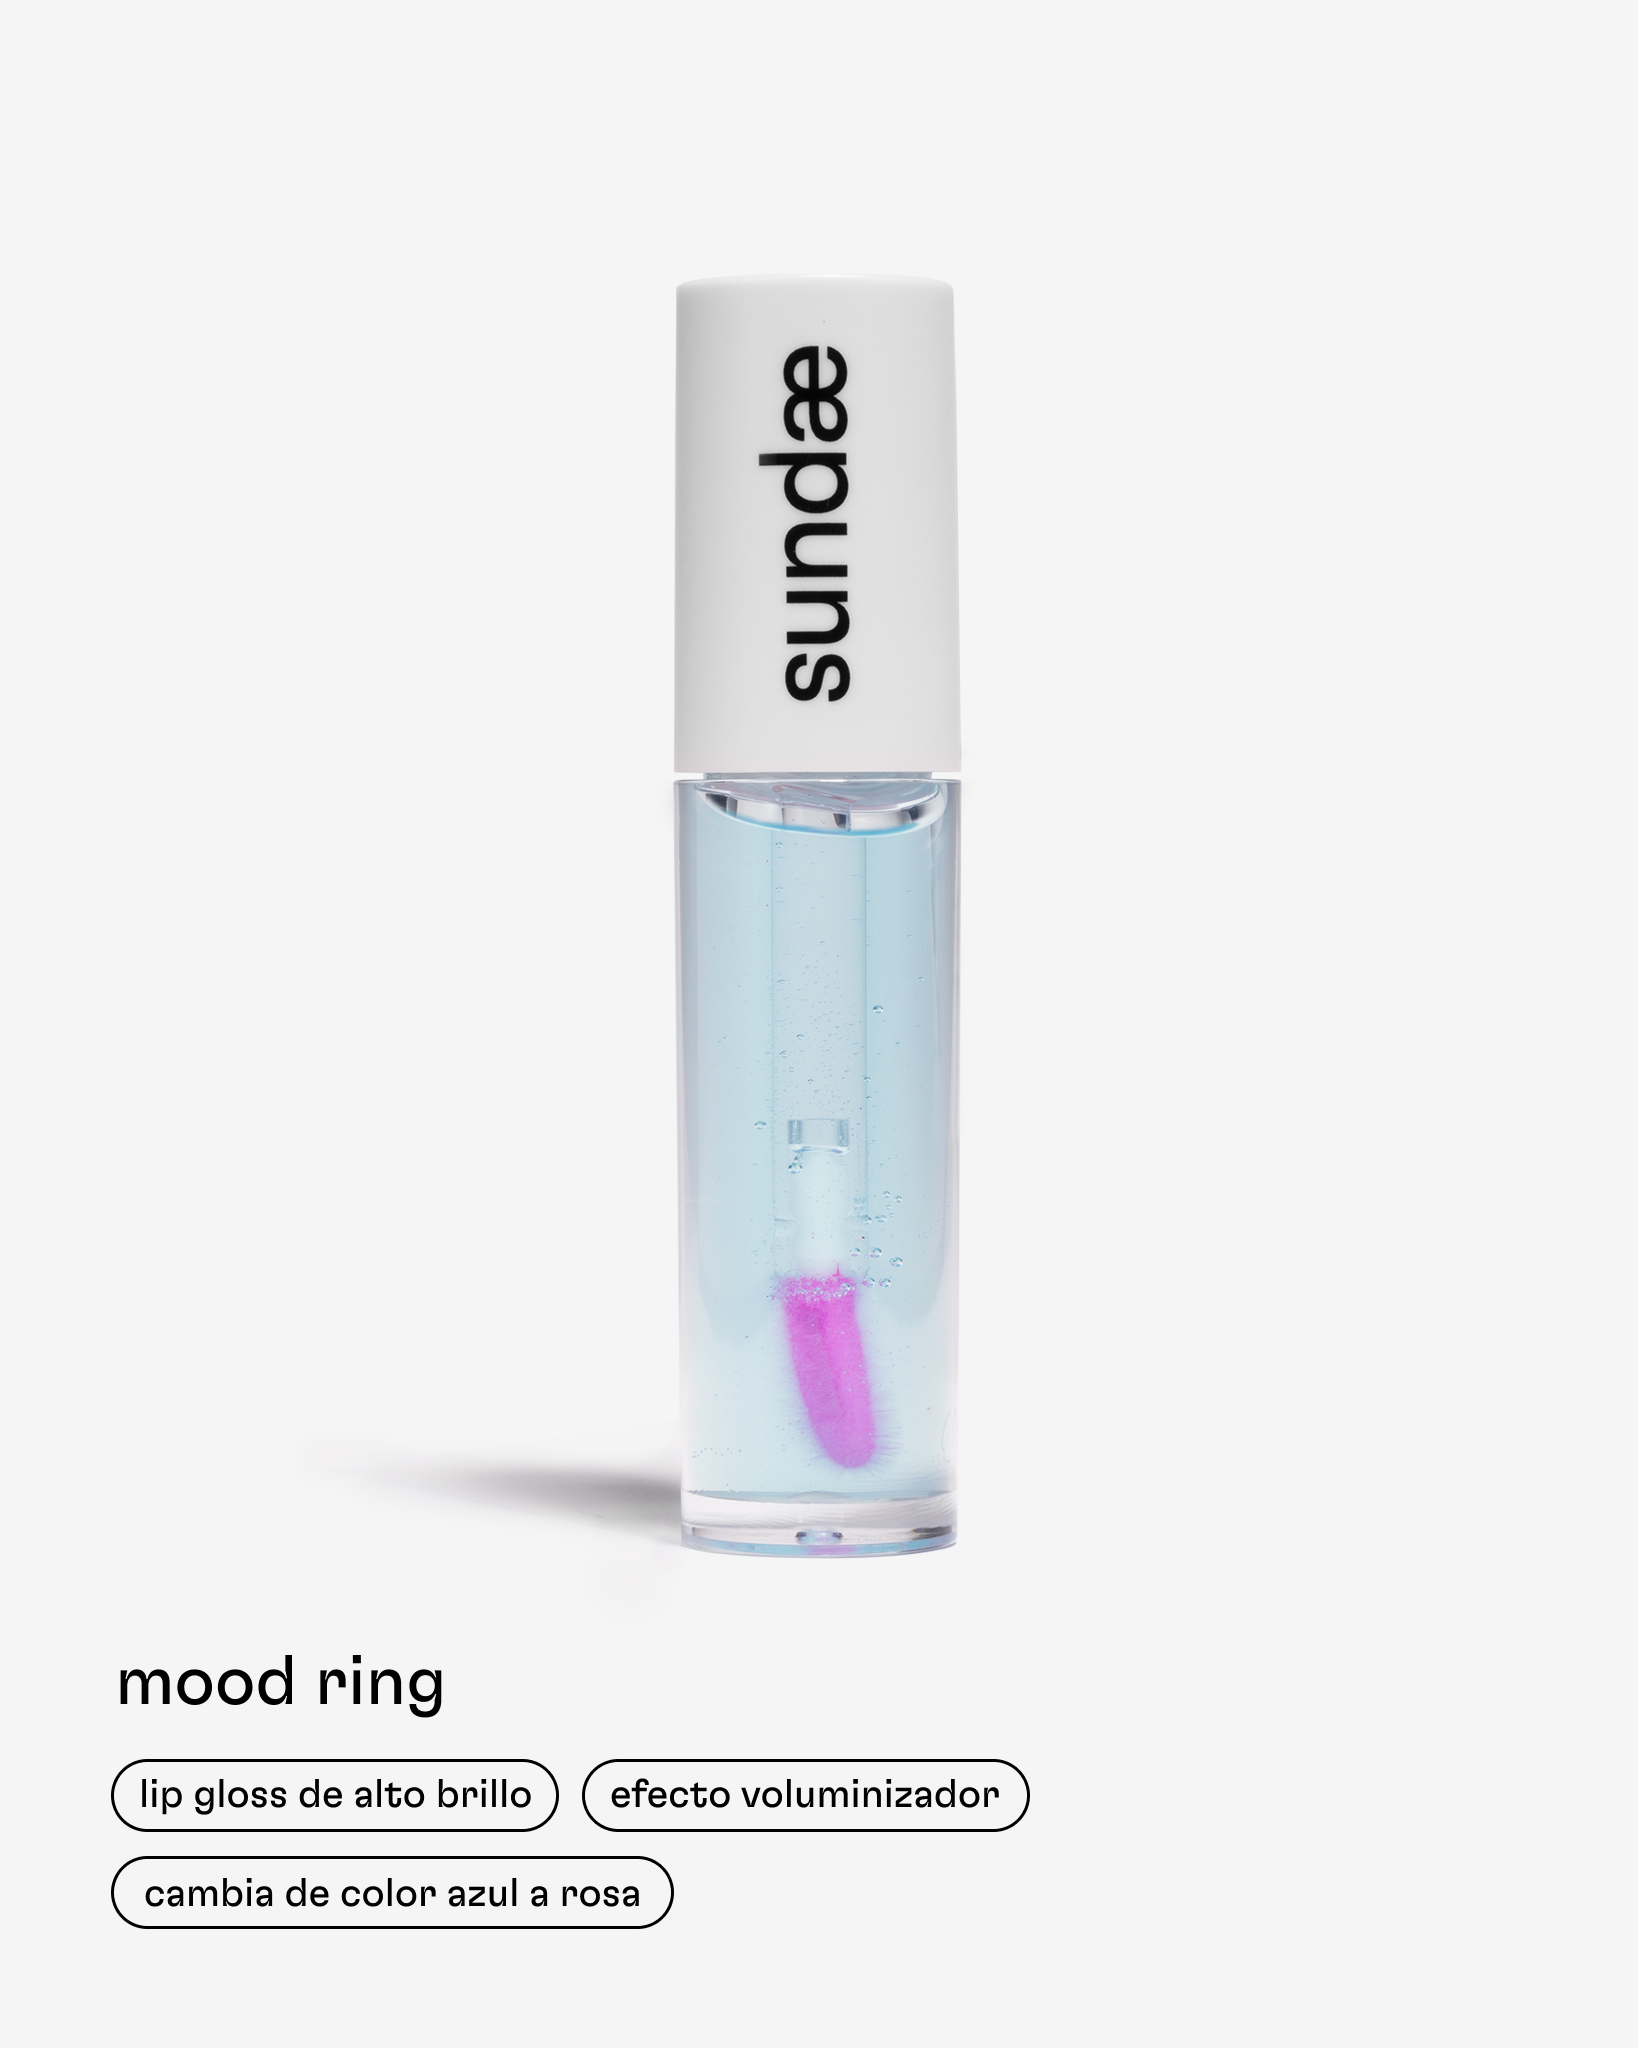 lip gloss de Momiji Beauty Mood Ring, que hidrata los labios, brinda una apariencia plump con efecto voluminizador, da una sensación de frescura.